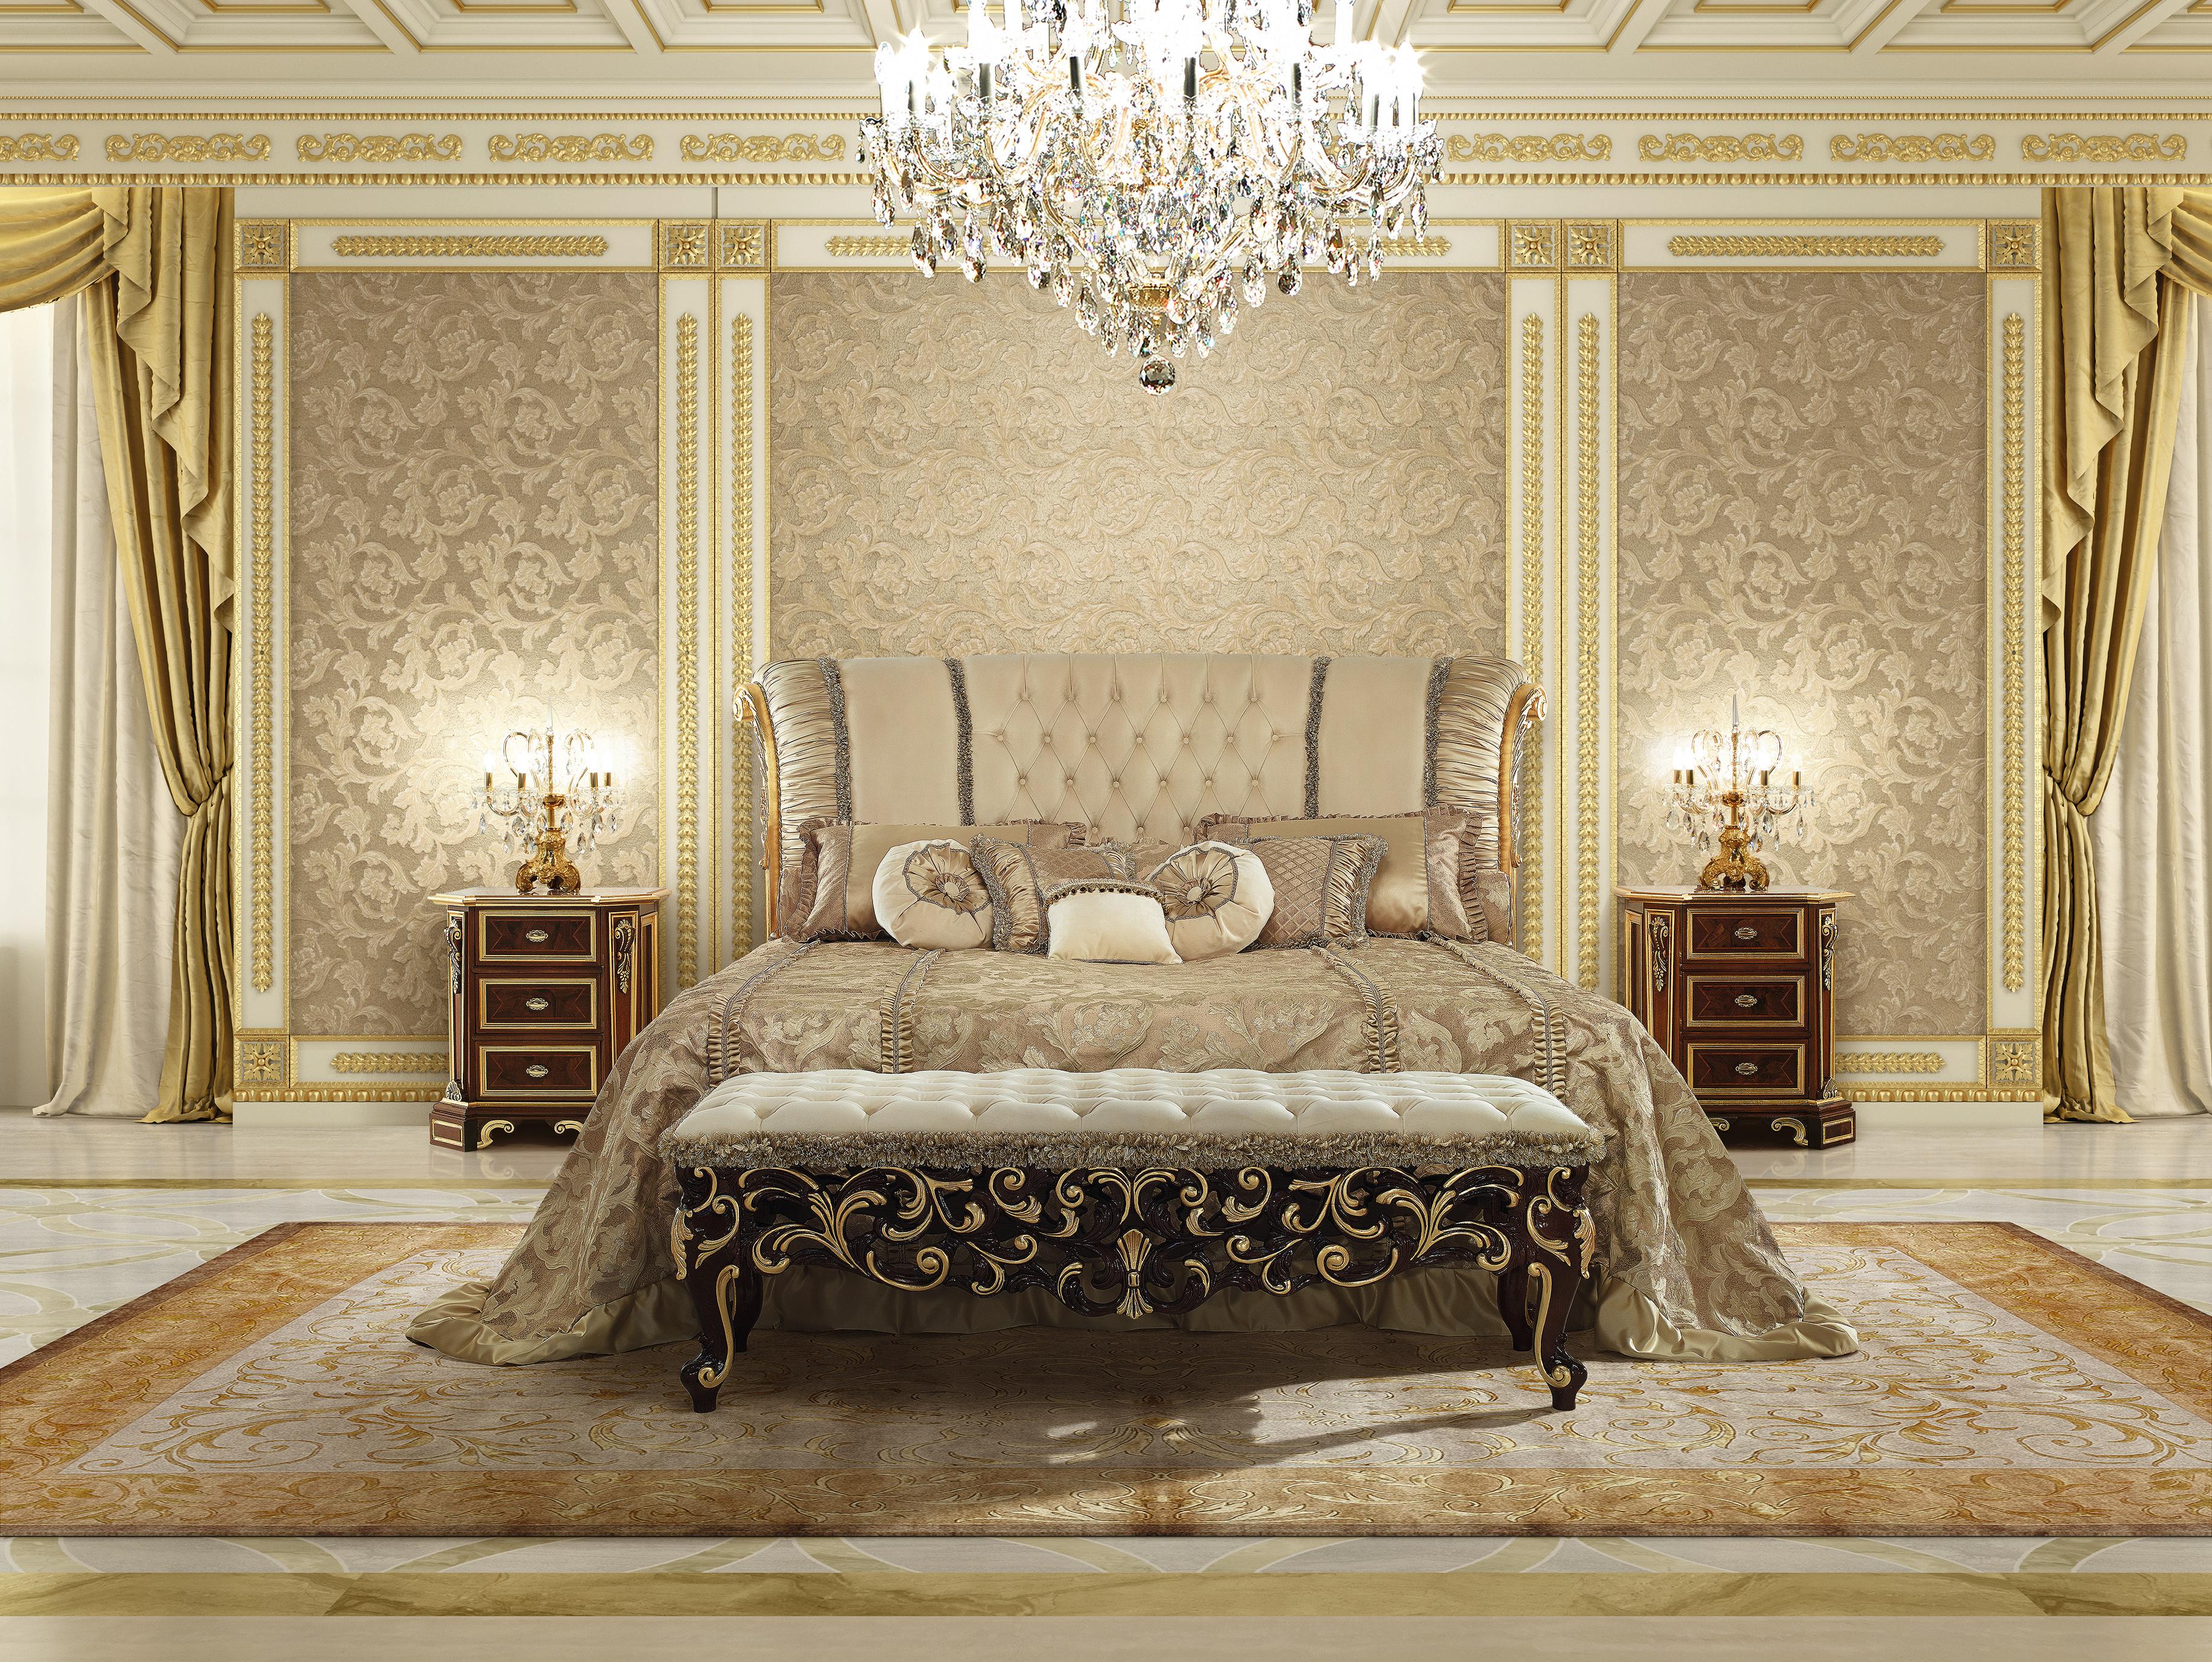 Als einzigartige Ergänzung zu einem der exklusiven Luxusbetten von Modenese Interiors vermittelt diese Bettbank ein absolutes Gefühl von zeitloser Entspannung. Weich und elegant gepolstert mit einem edlen elfenbeinfarbenen Leder, veredelt mit einem